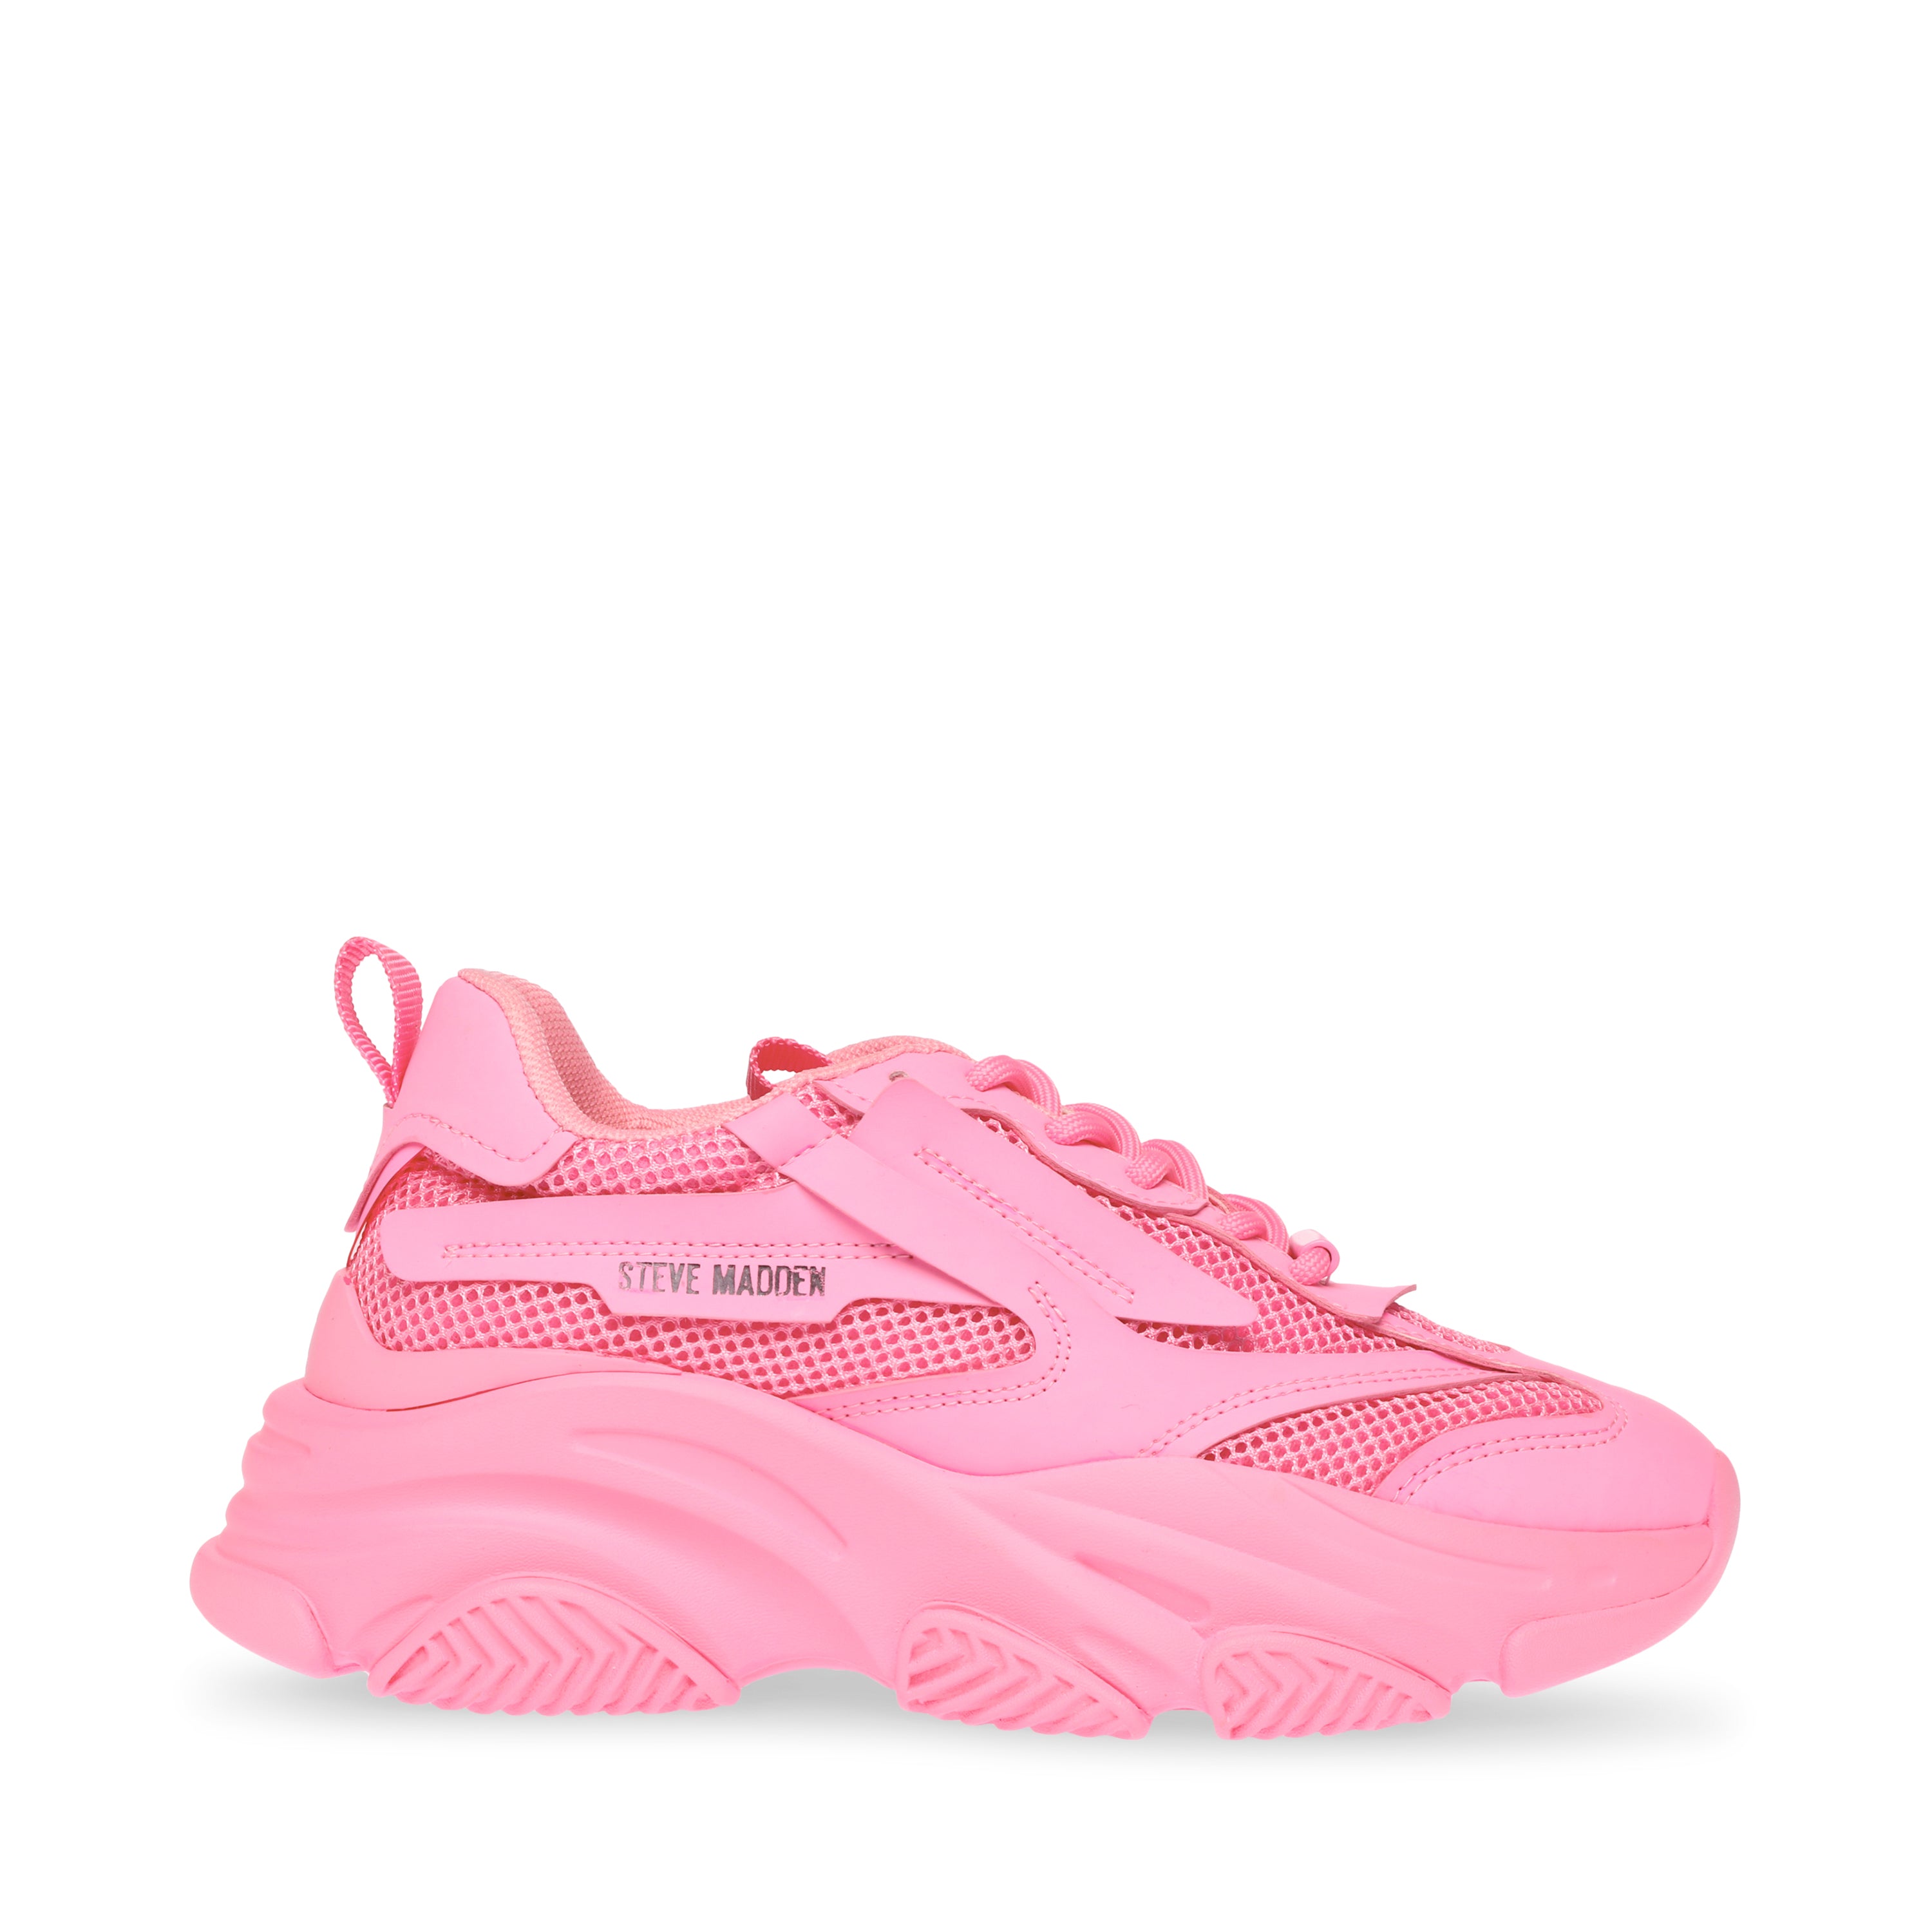 POSSESSIVE Hot Pink Sneakers - Steve Madden Australia